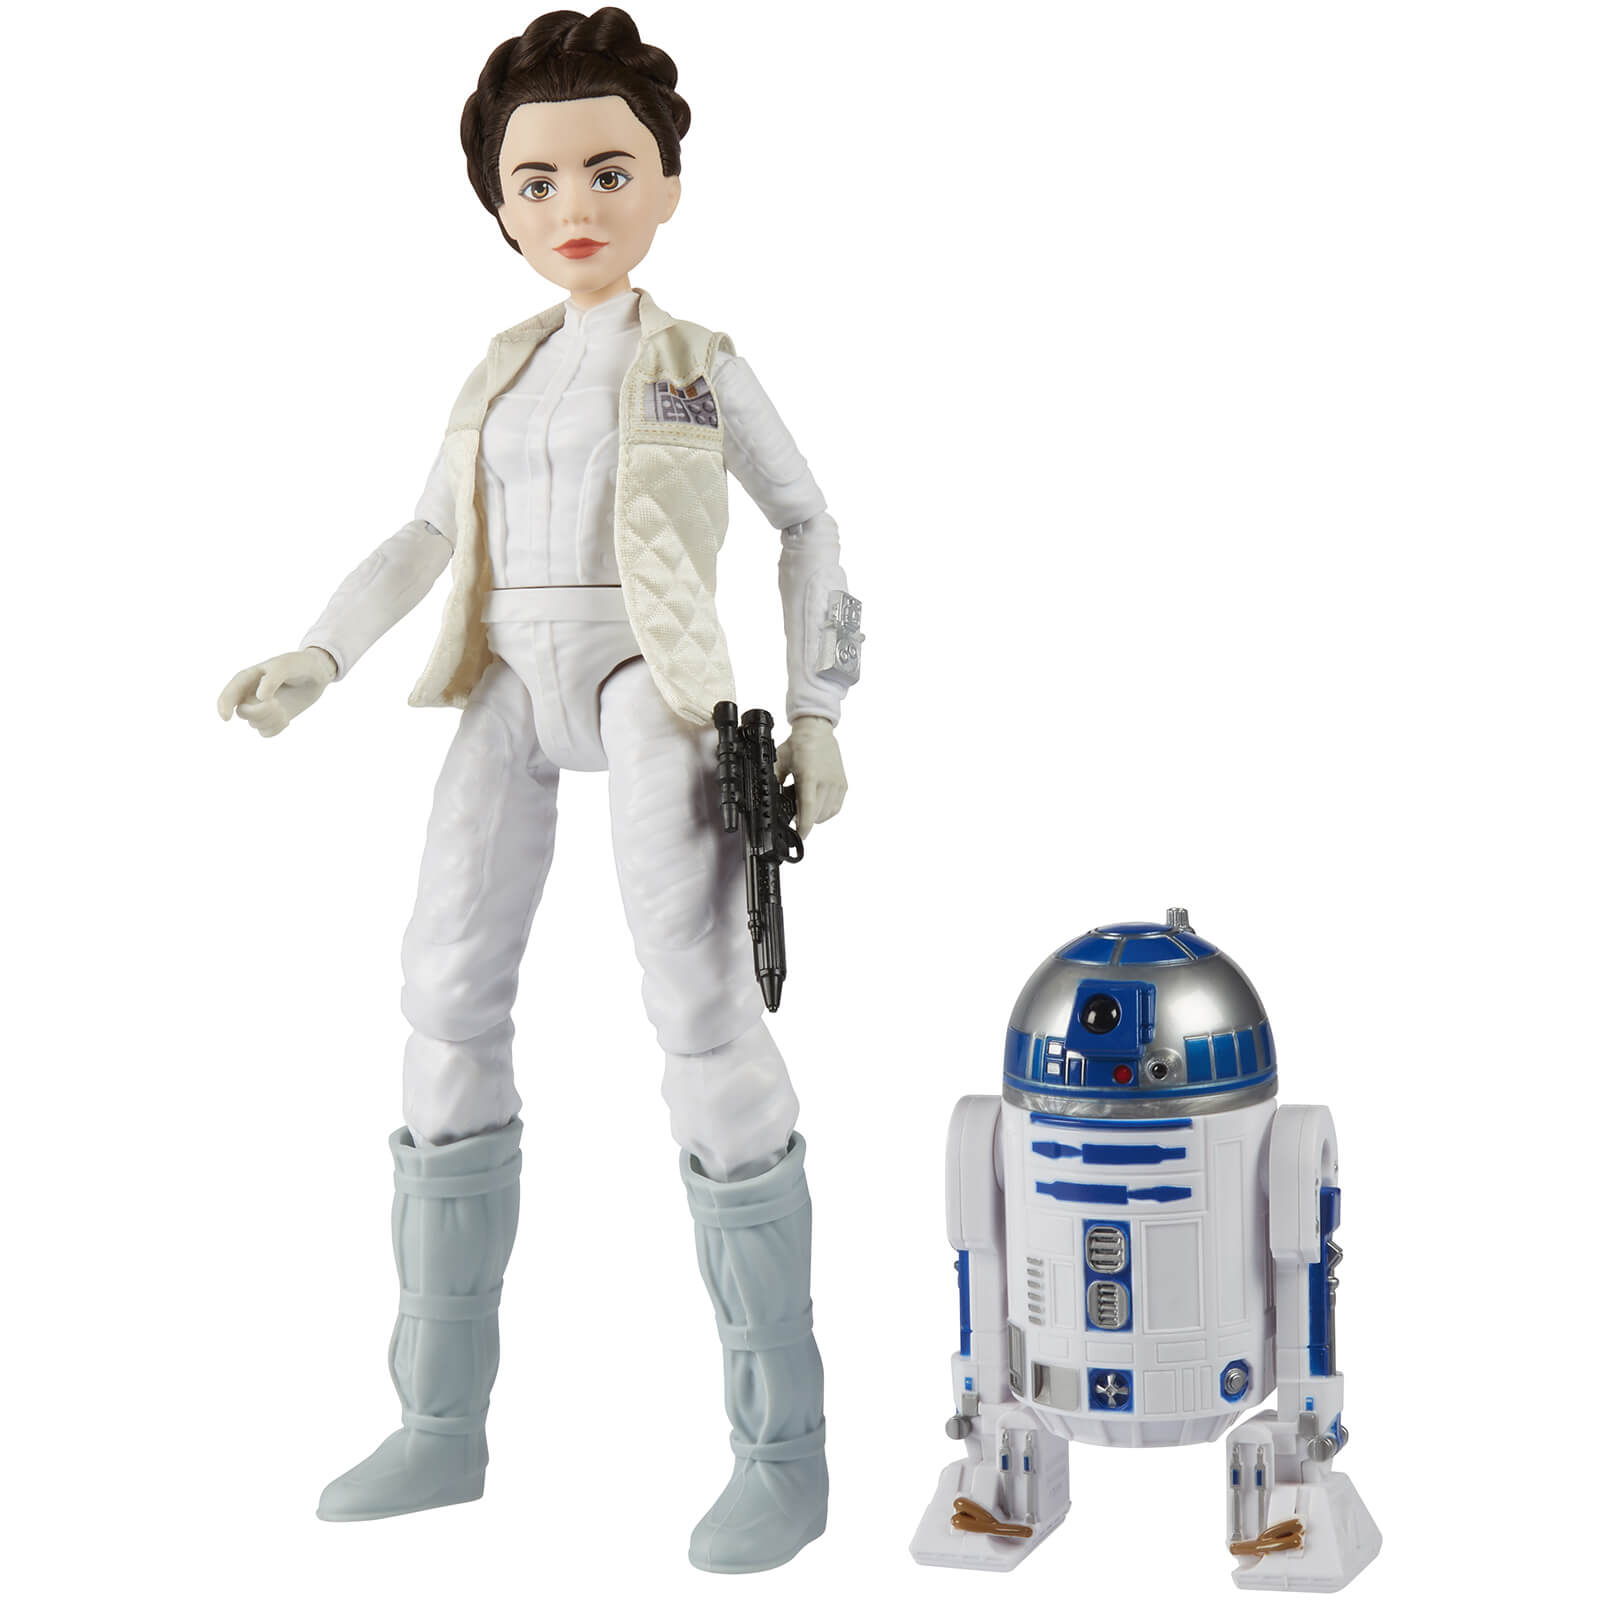 Star Wars Forces of Destiny Adventure Figure Friends Leia & R2-D2 11" Figures